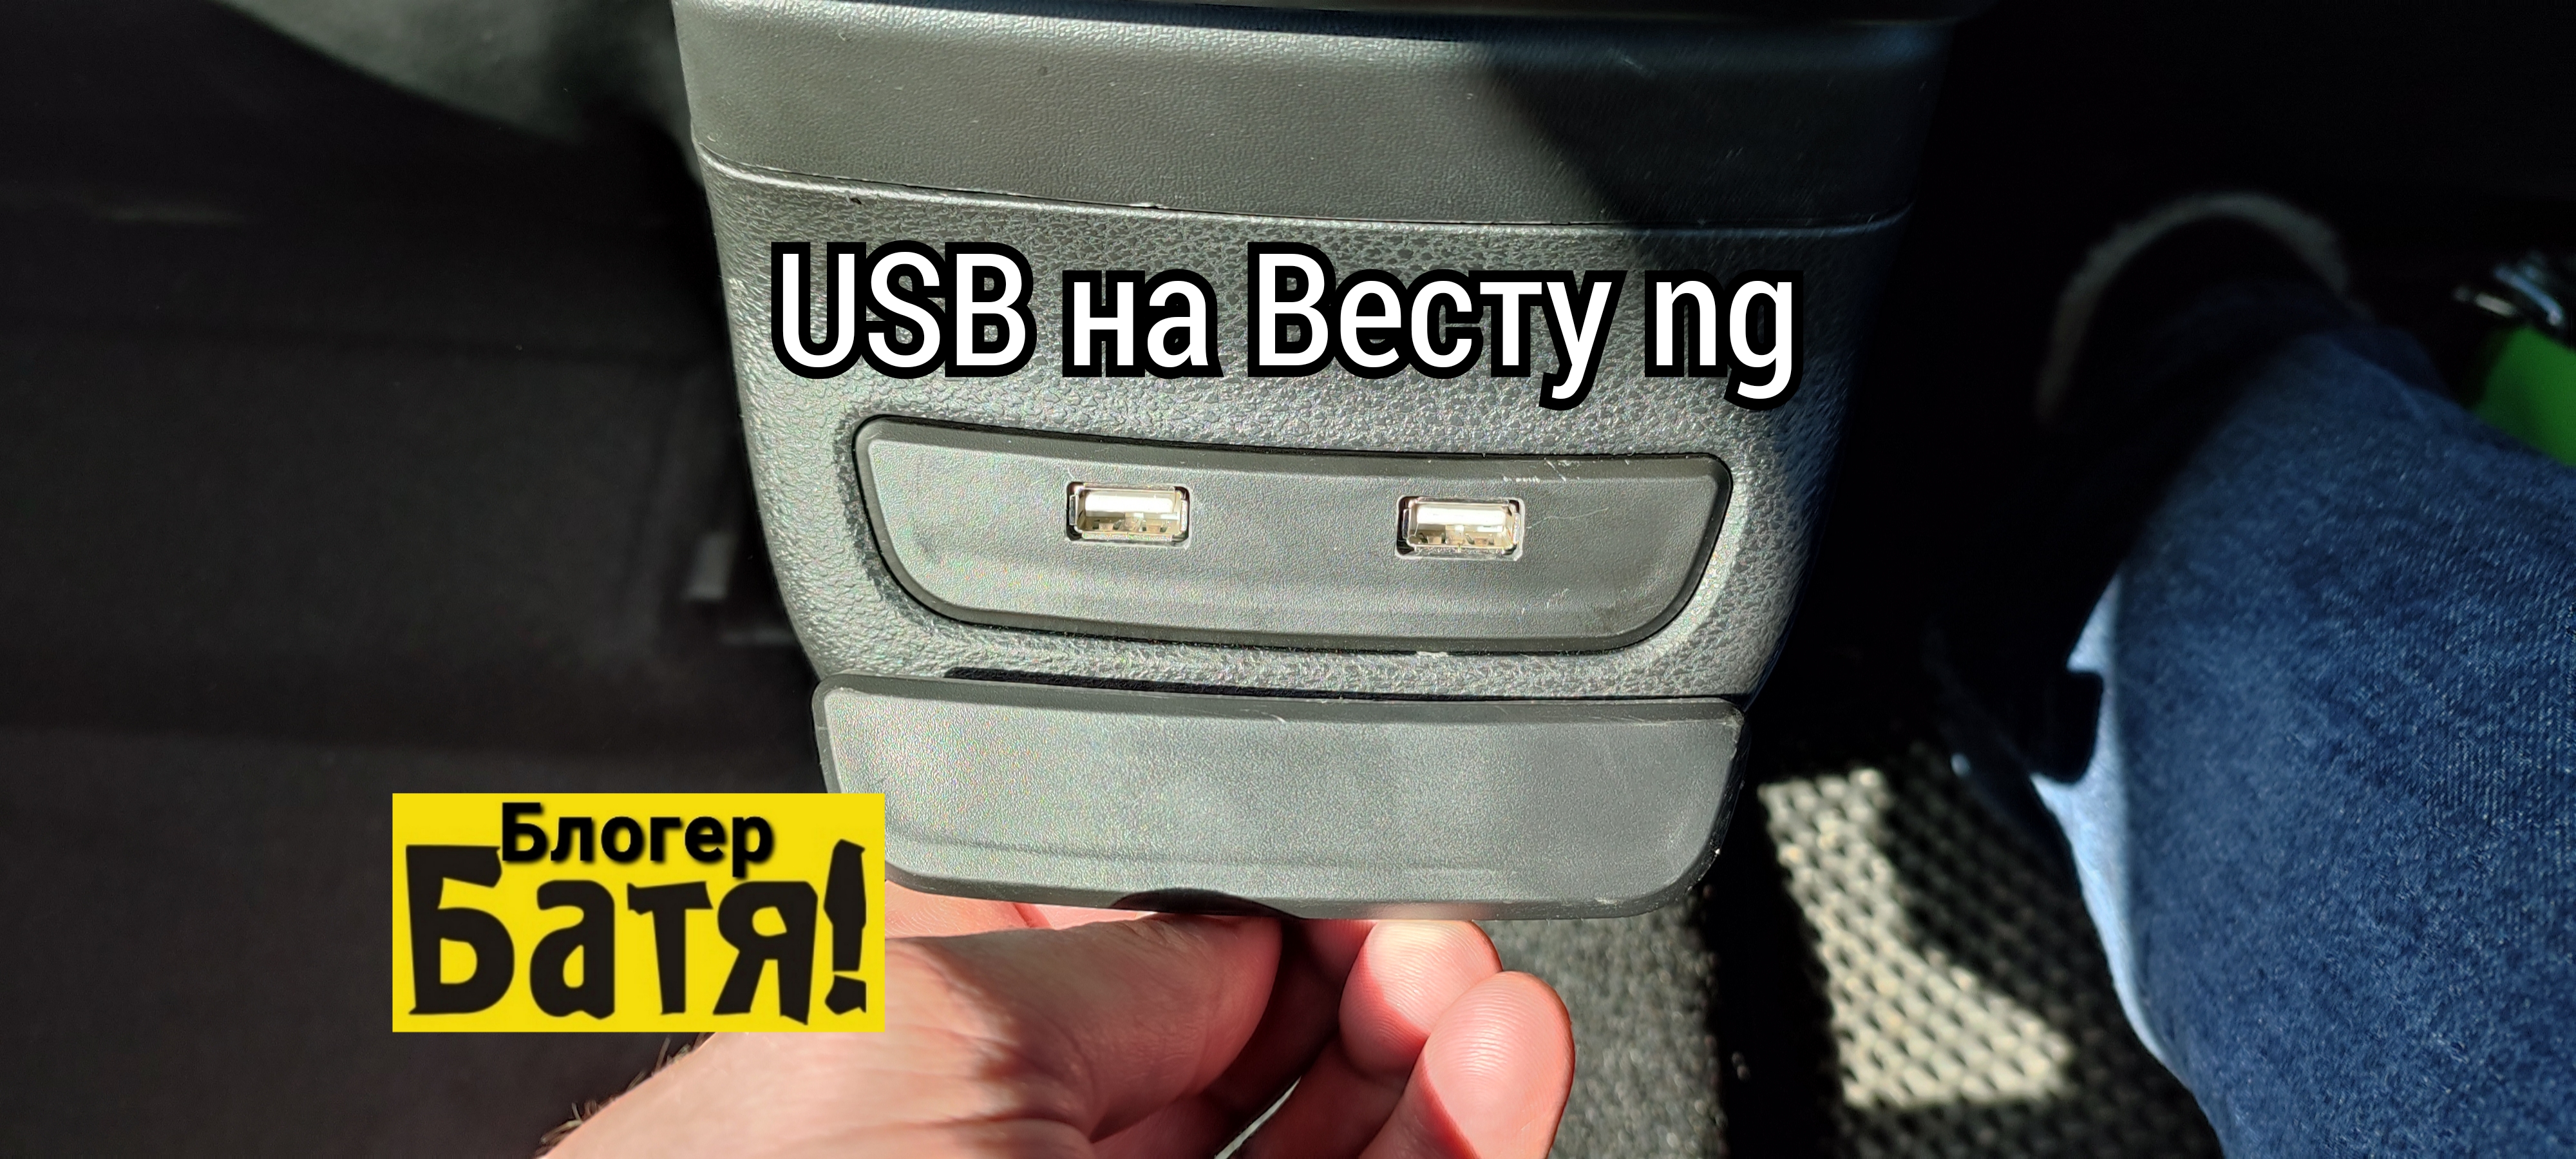 USB для задних пассажиров Лада Веста